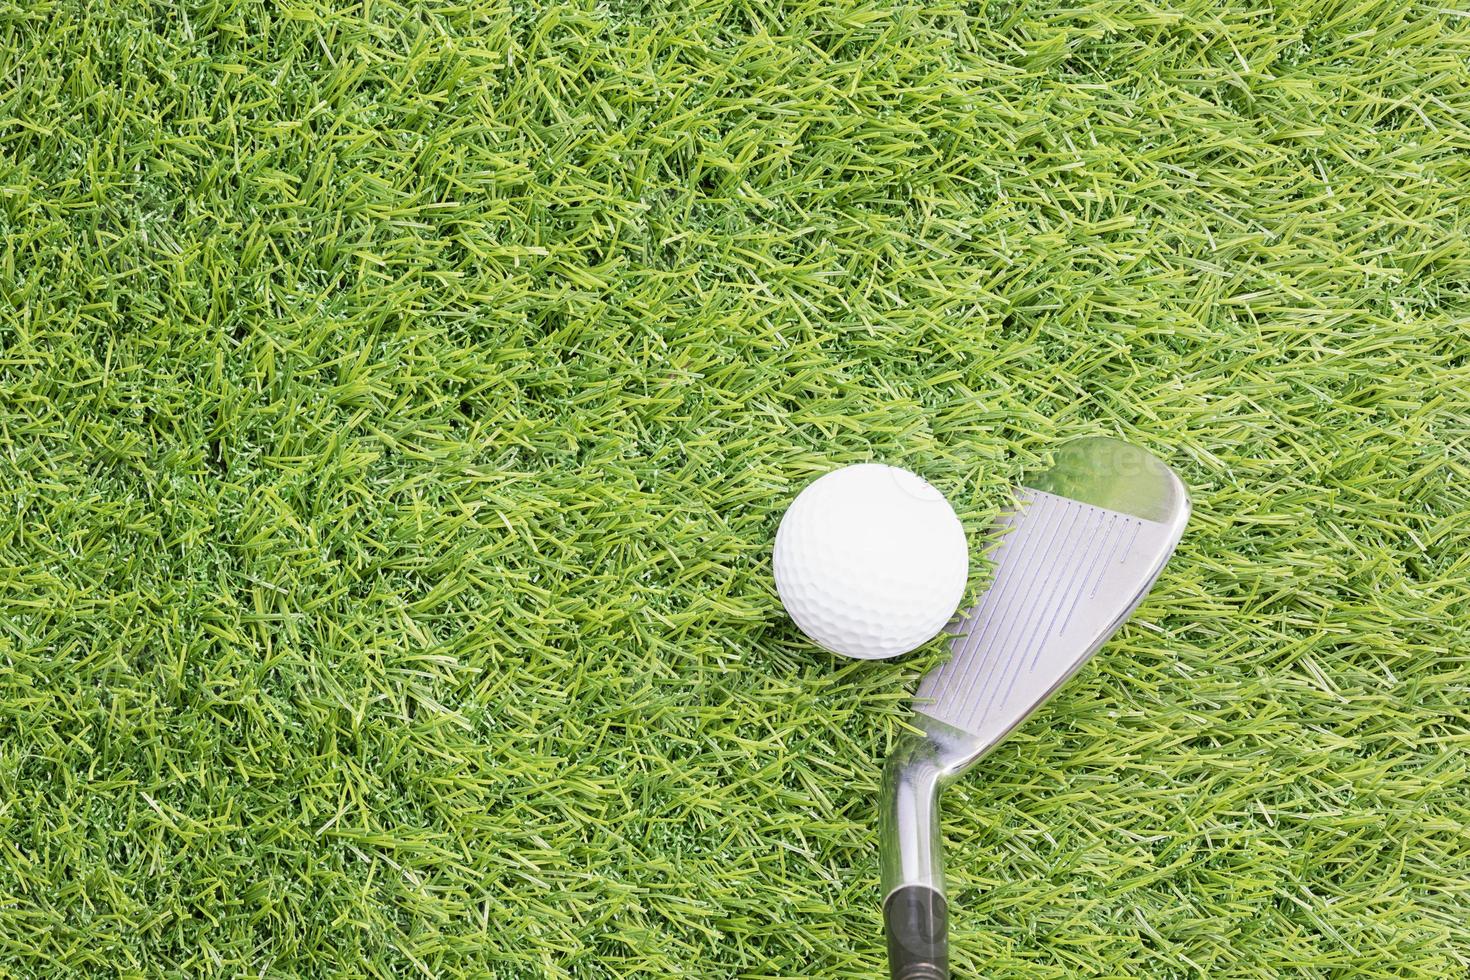 Golfball vor dem Schlagen mit dem Golfschläger foto